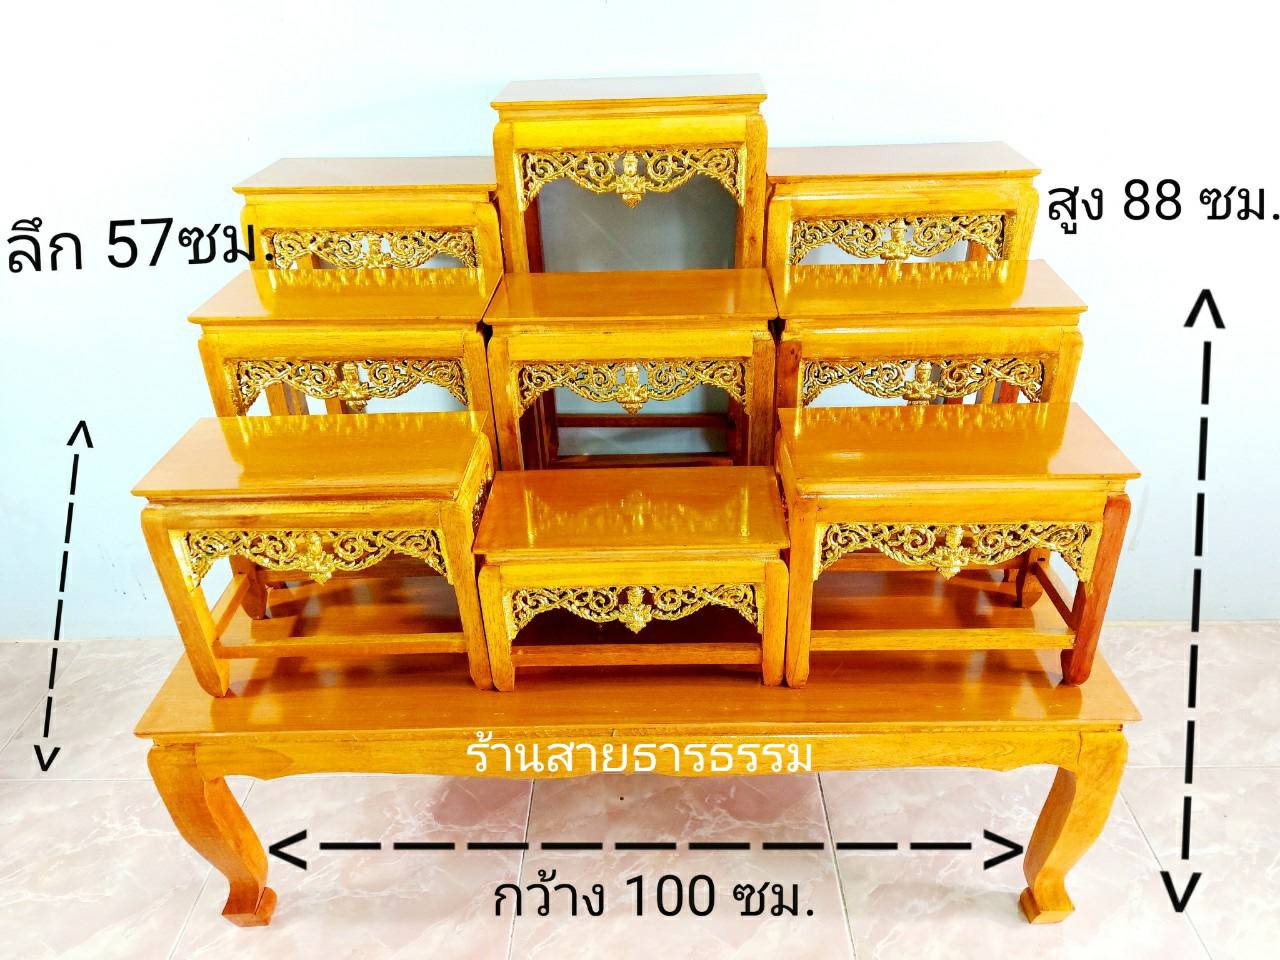 โต๊ะหมู่บูชา (ถูกมาก) โต๊ะหมู่ 9 หน้า 6 ยาว 1 เมตร สีไม้แชลค/สีโอ๊ค ลายกระจังปิดทอง งานสวย คุณภาพดี ส่งไว ราคาโรงงาน